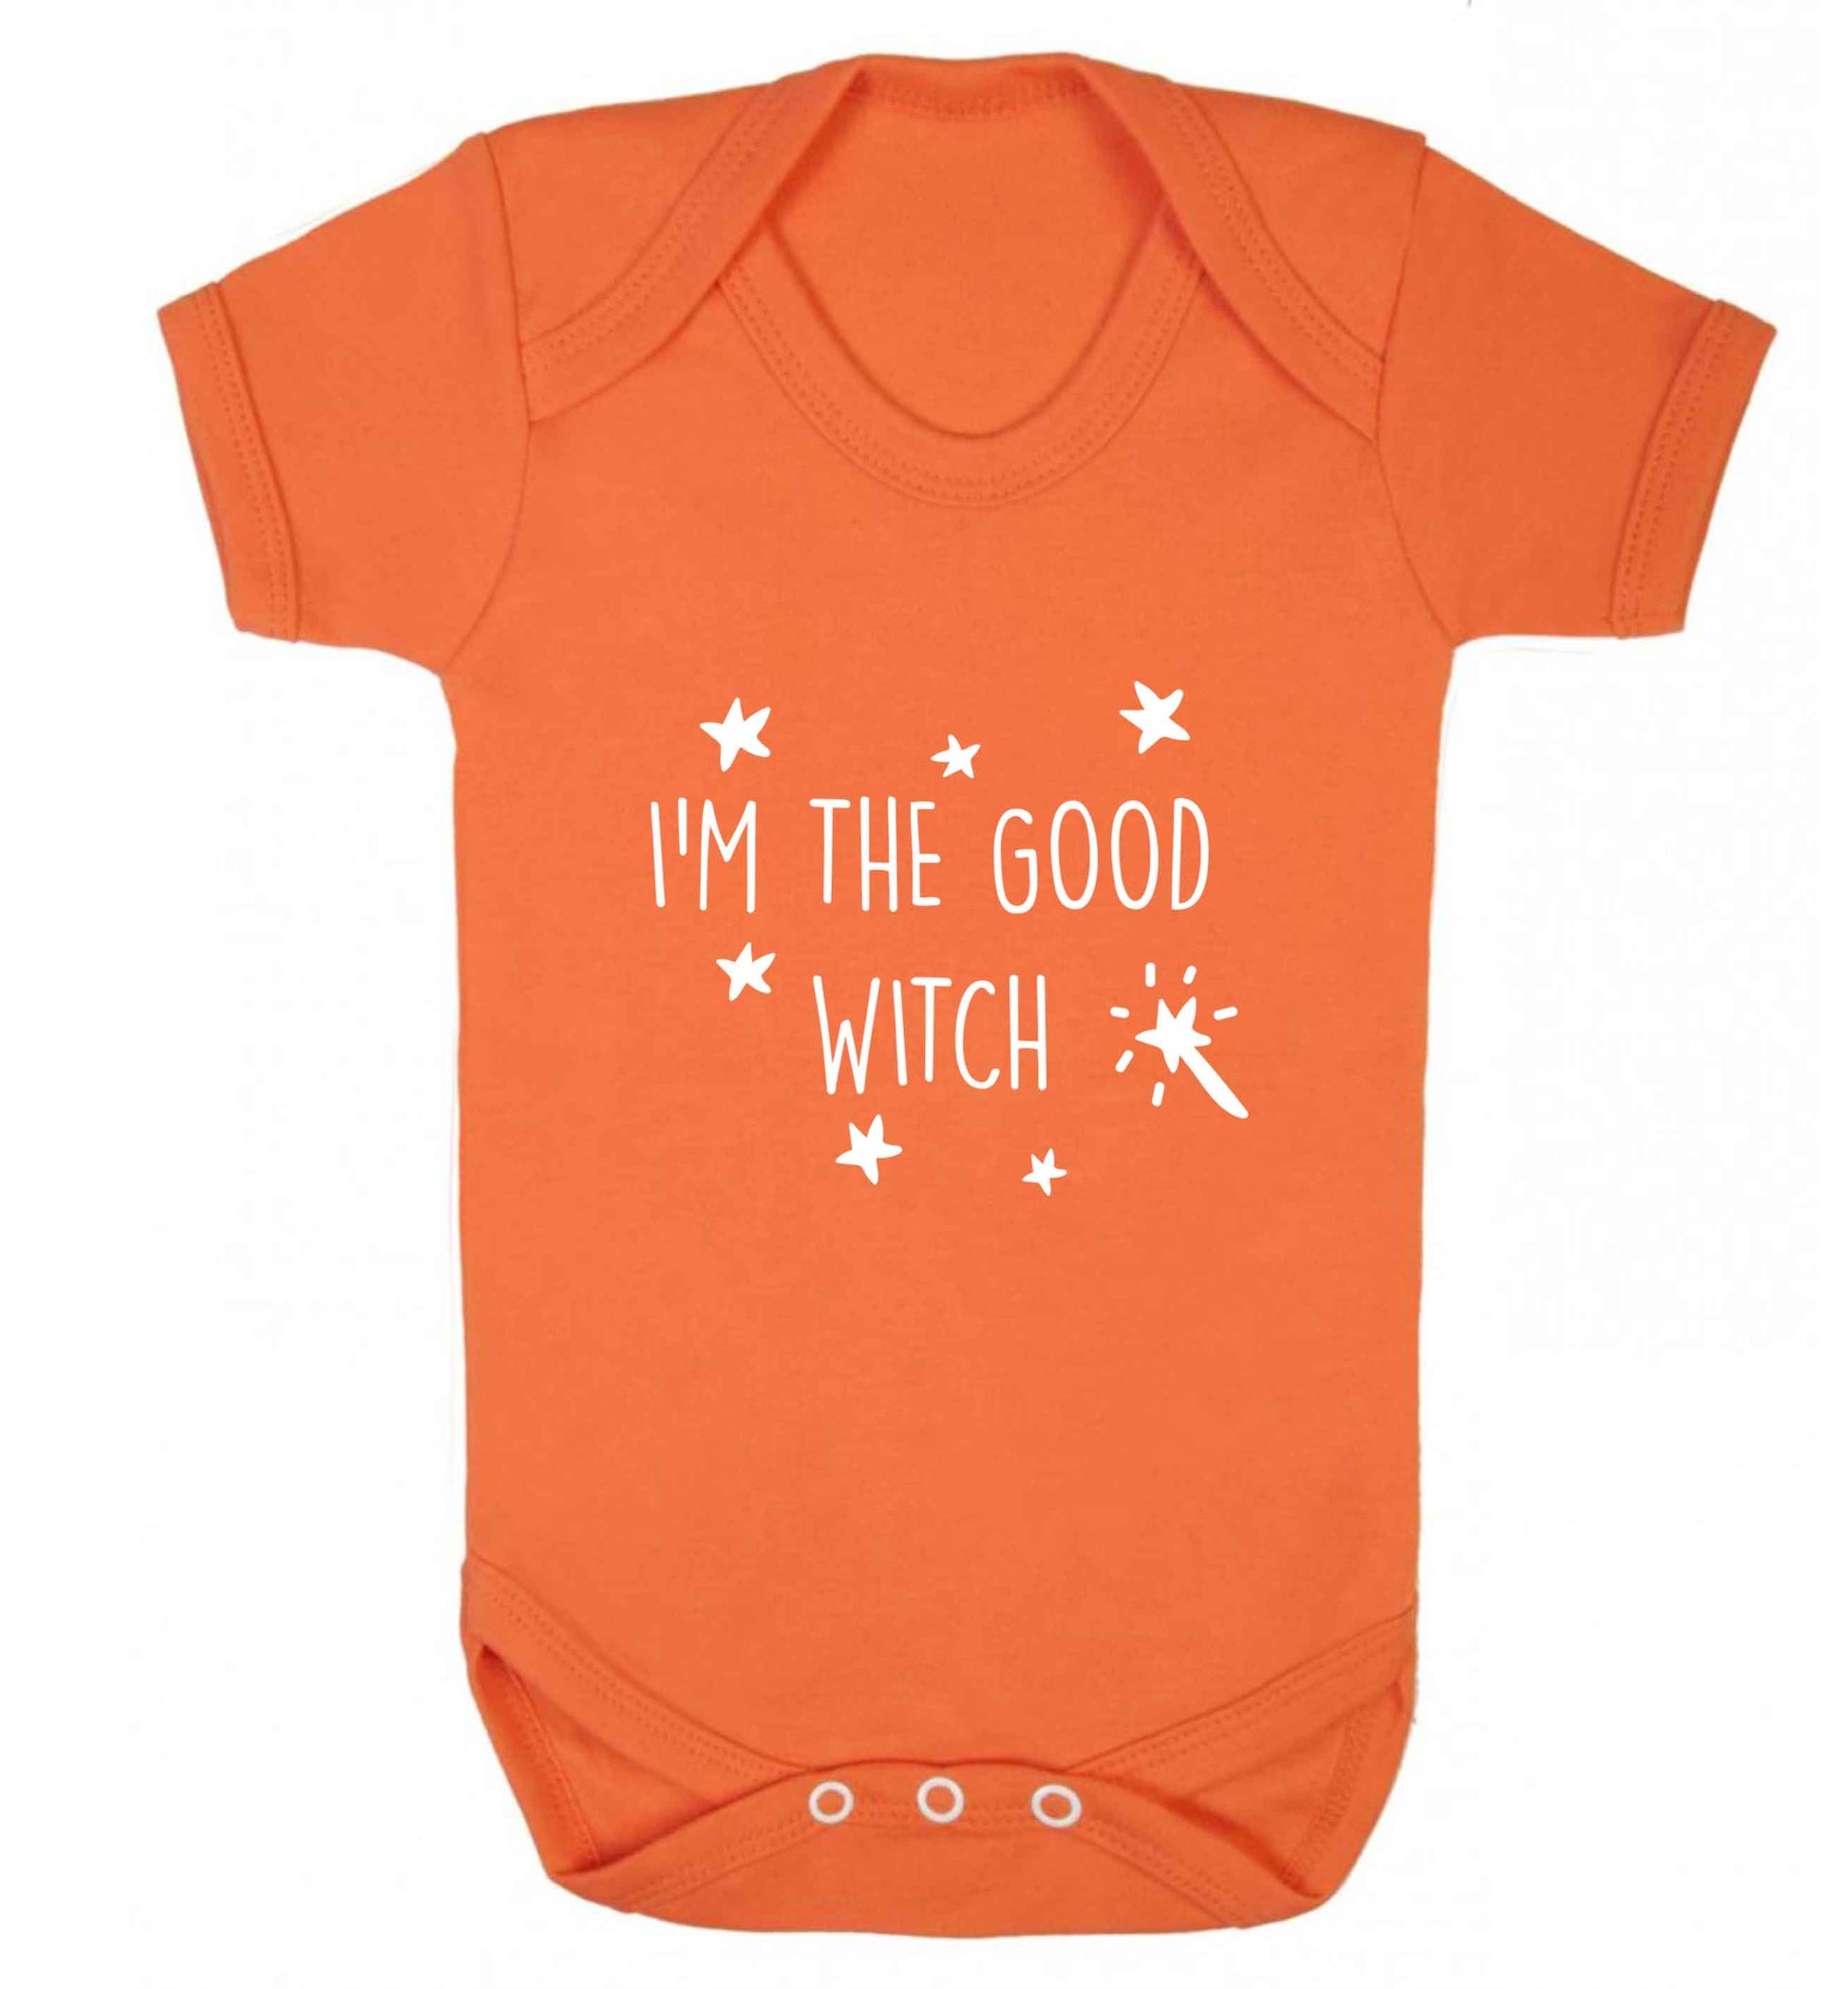 Good witch baby vest orange 18-24 months